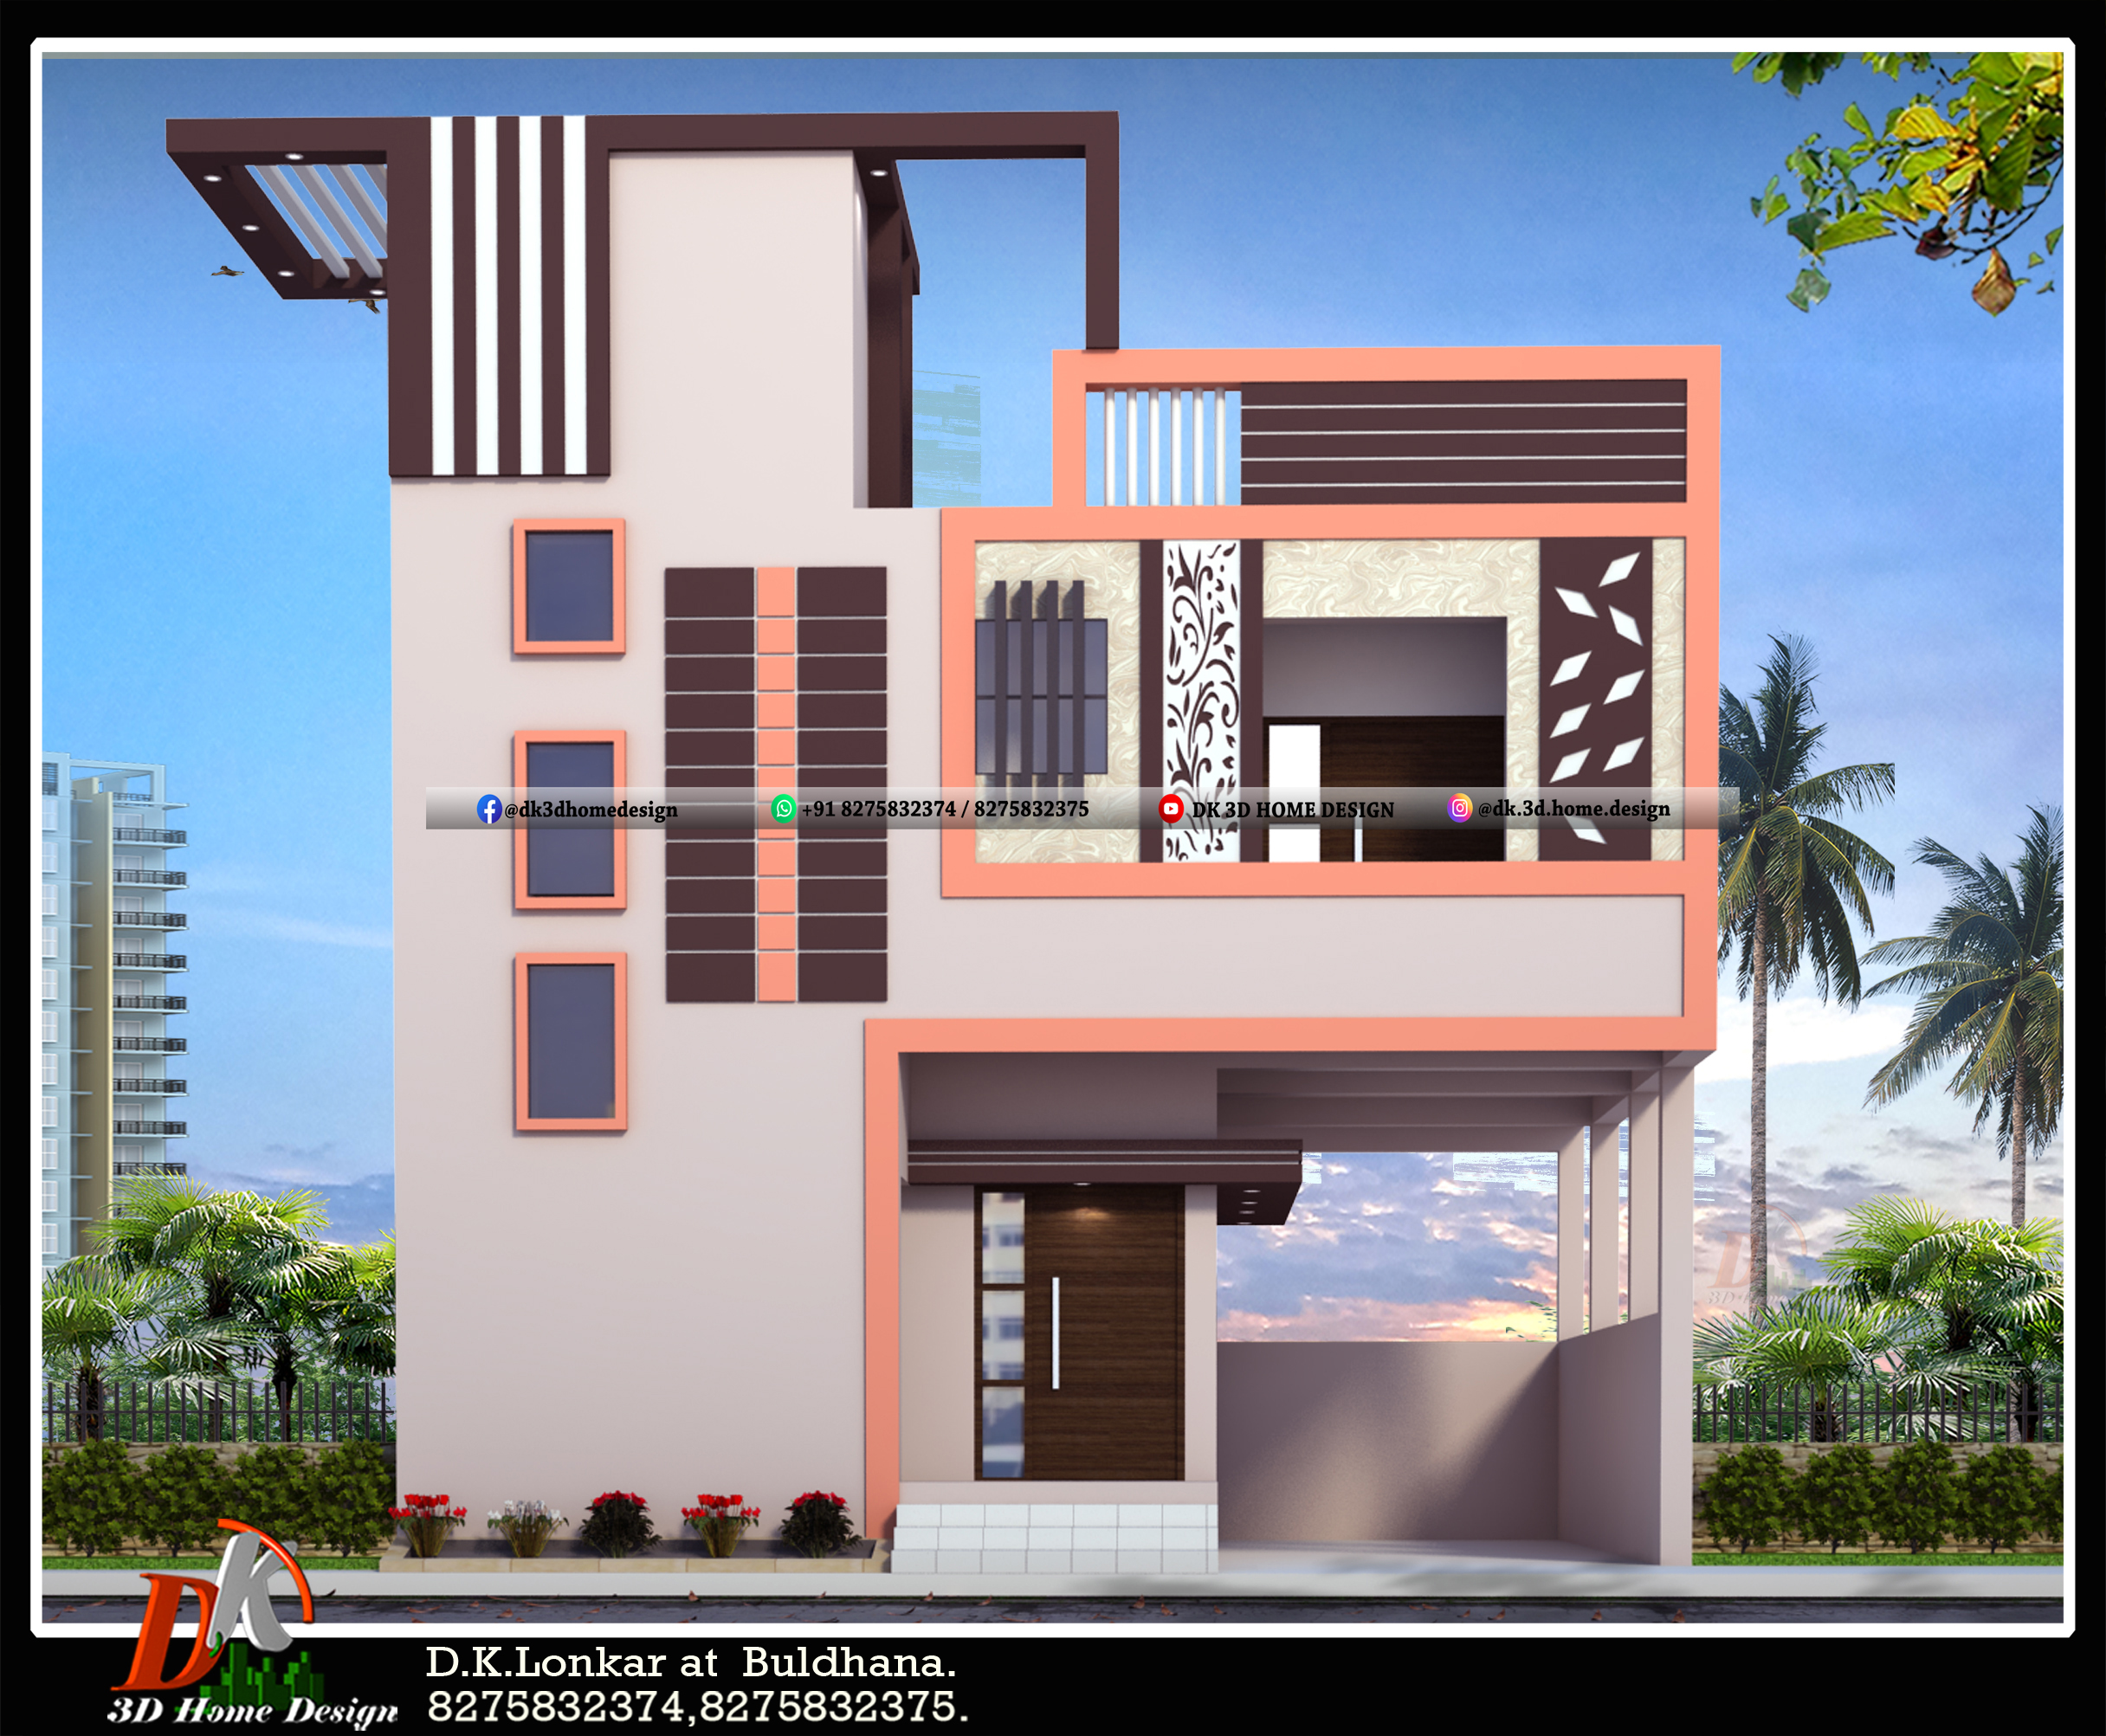 house elevation design